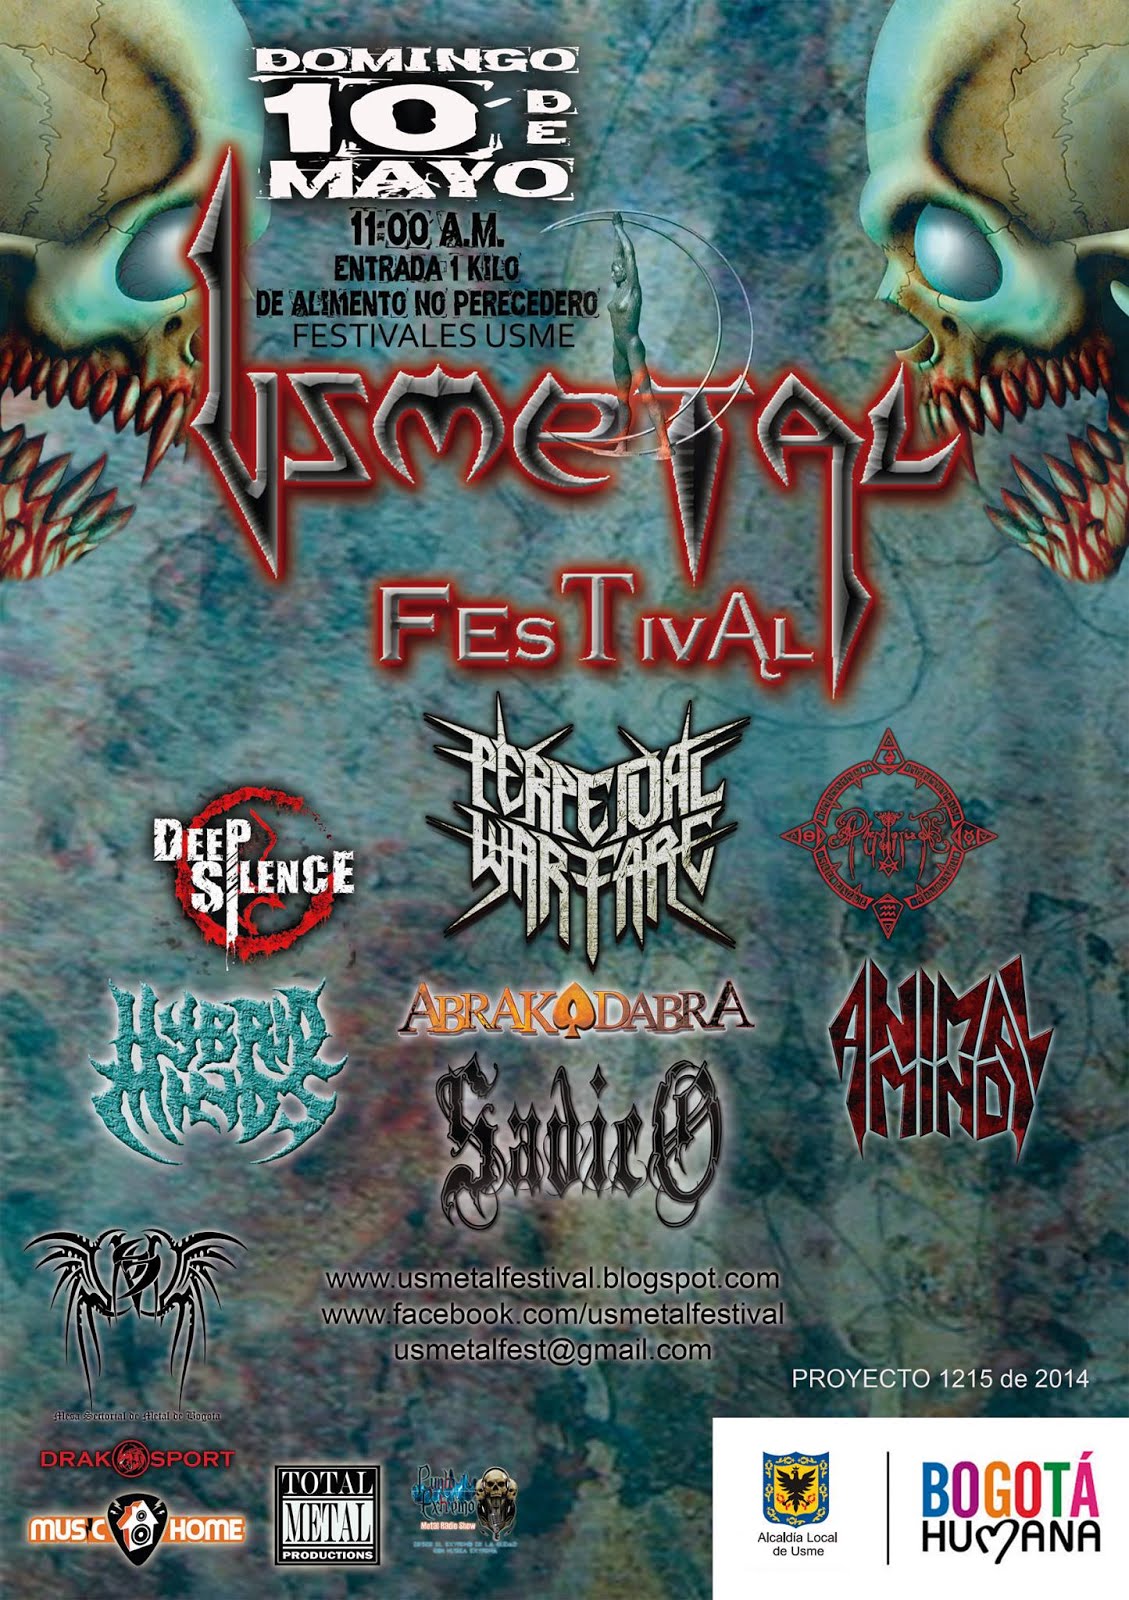 Usmetal Festival 2015